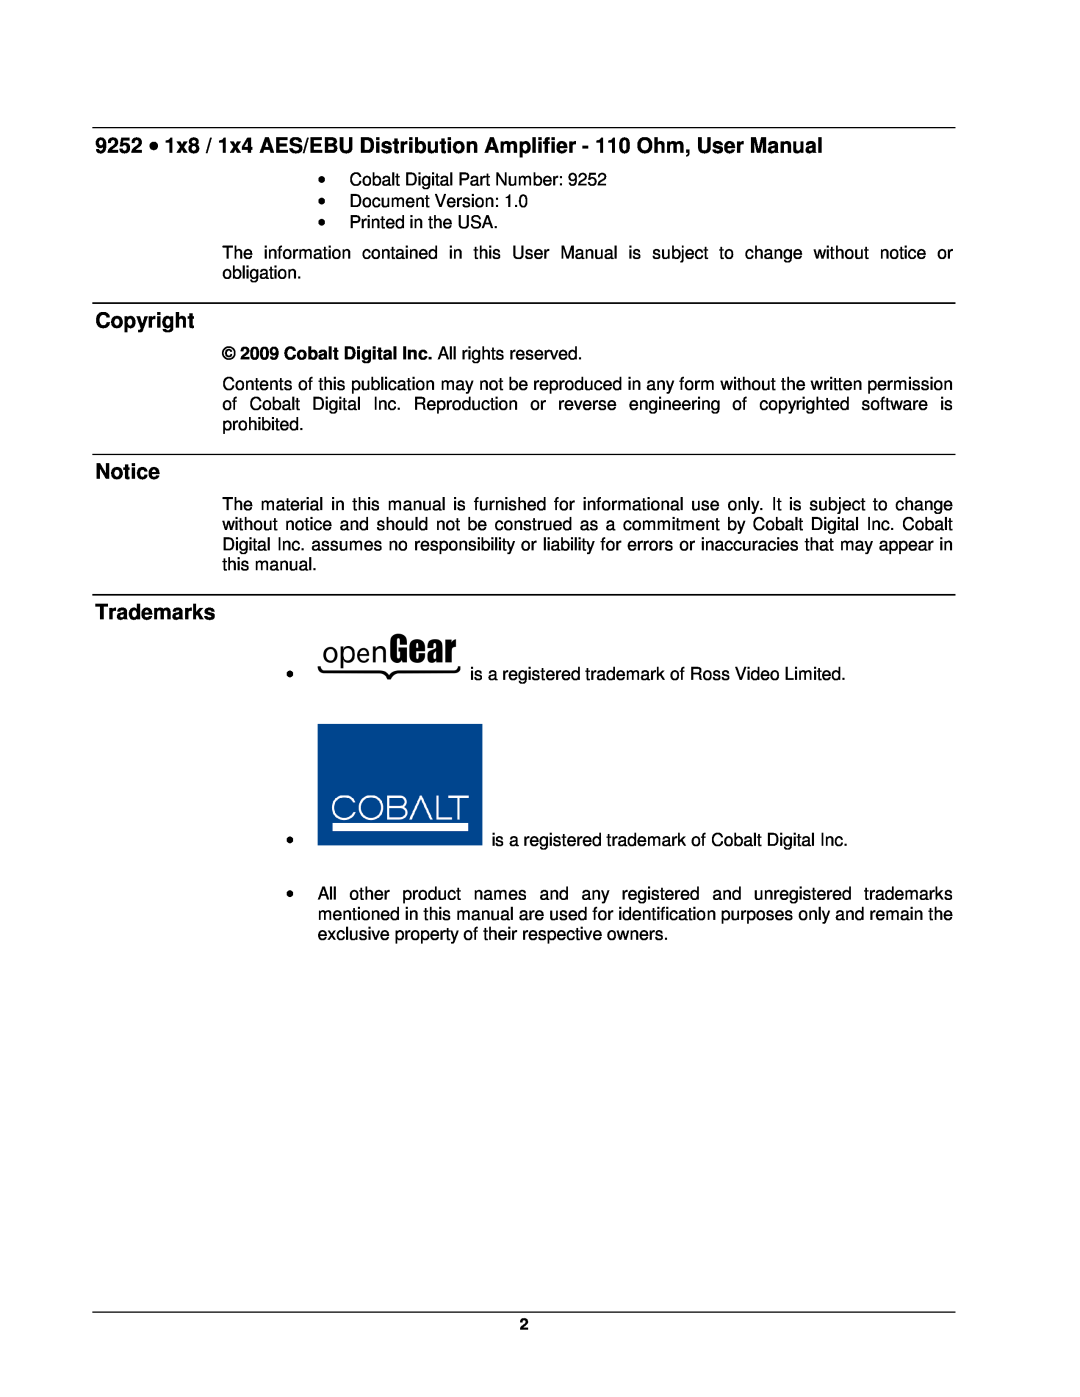 Cobalt Networks 9252 user manual Copyright, Trademarks, Cobalt Digital Inc. All rights reserved 